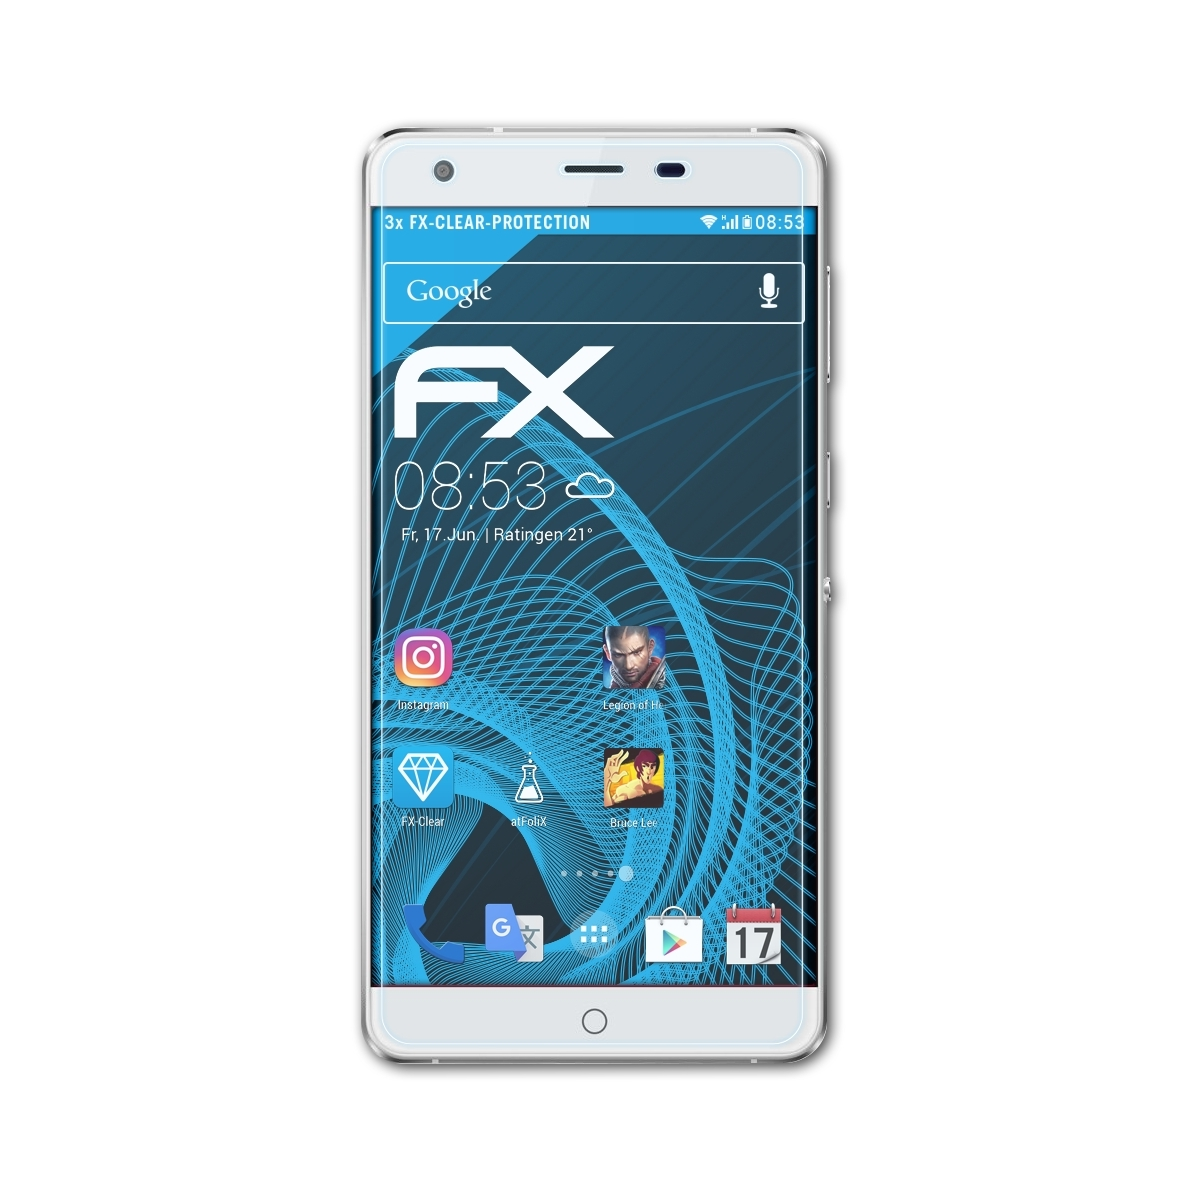 ATFOLIX 3x FX-Clear Ulefone Power) Displayschutz(für